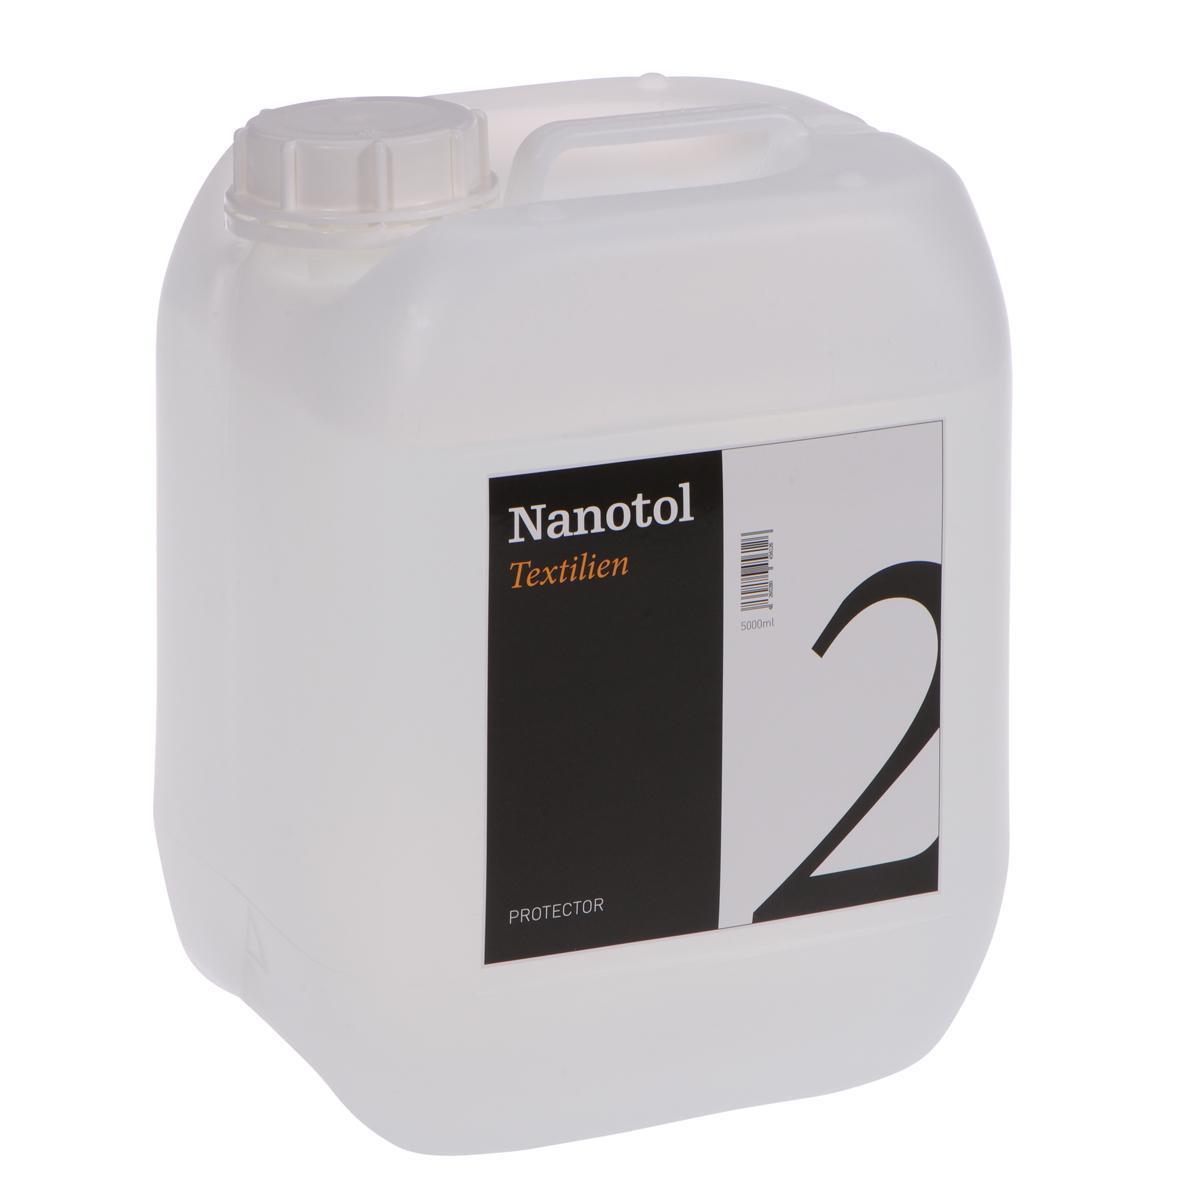 Nanotol Imprägnierspray - Protector für Textilien - 5 Liter